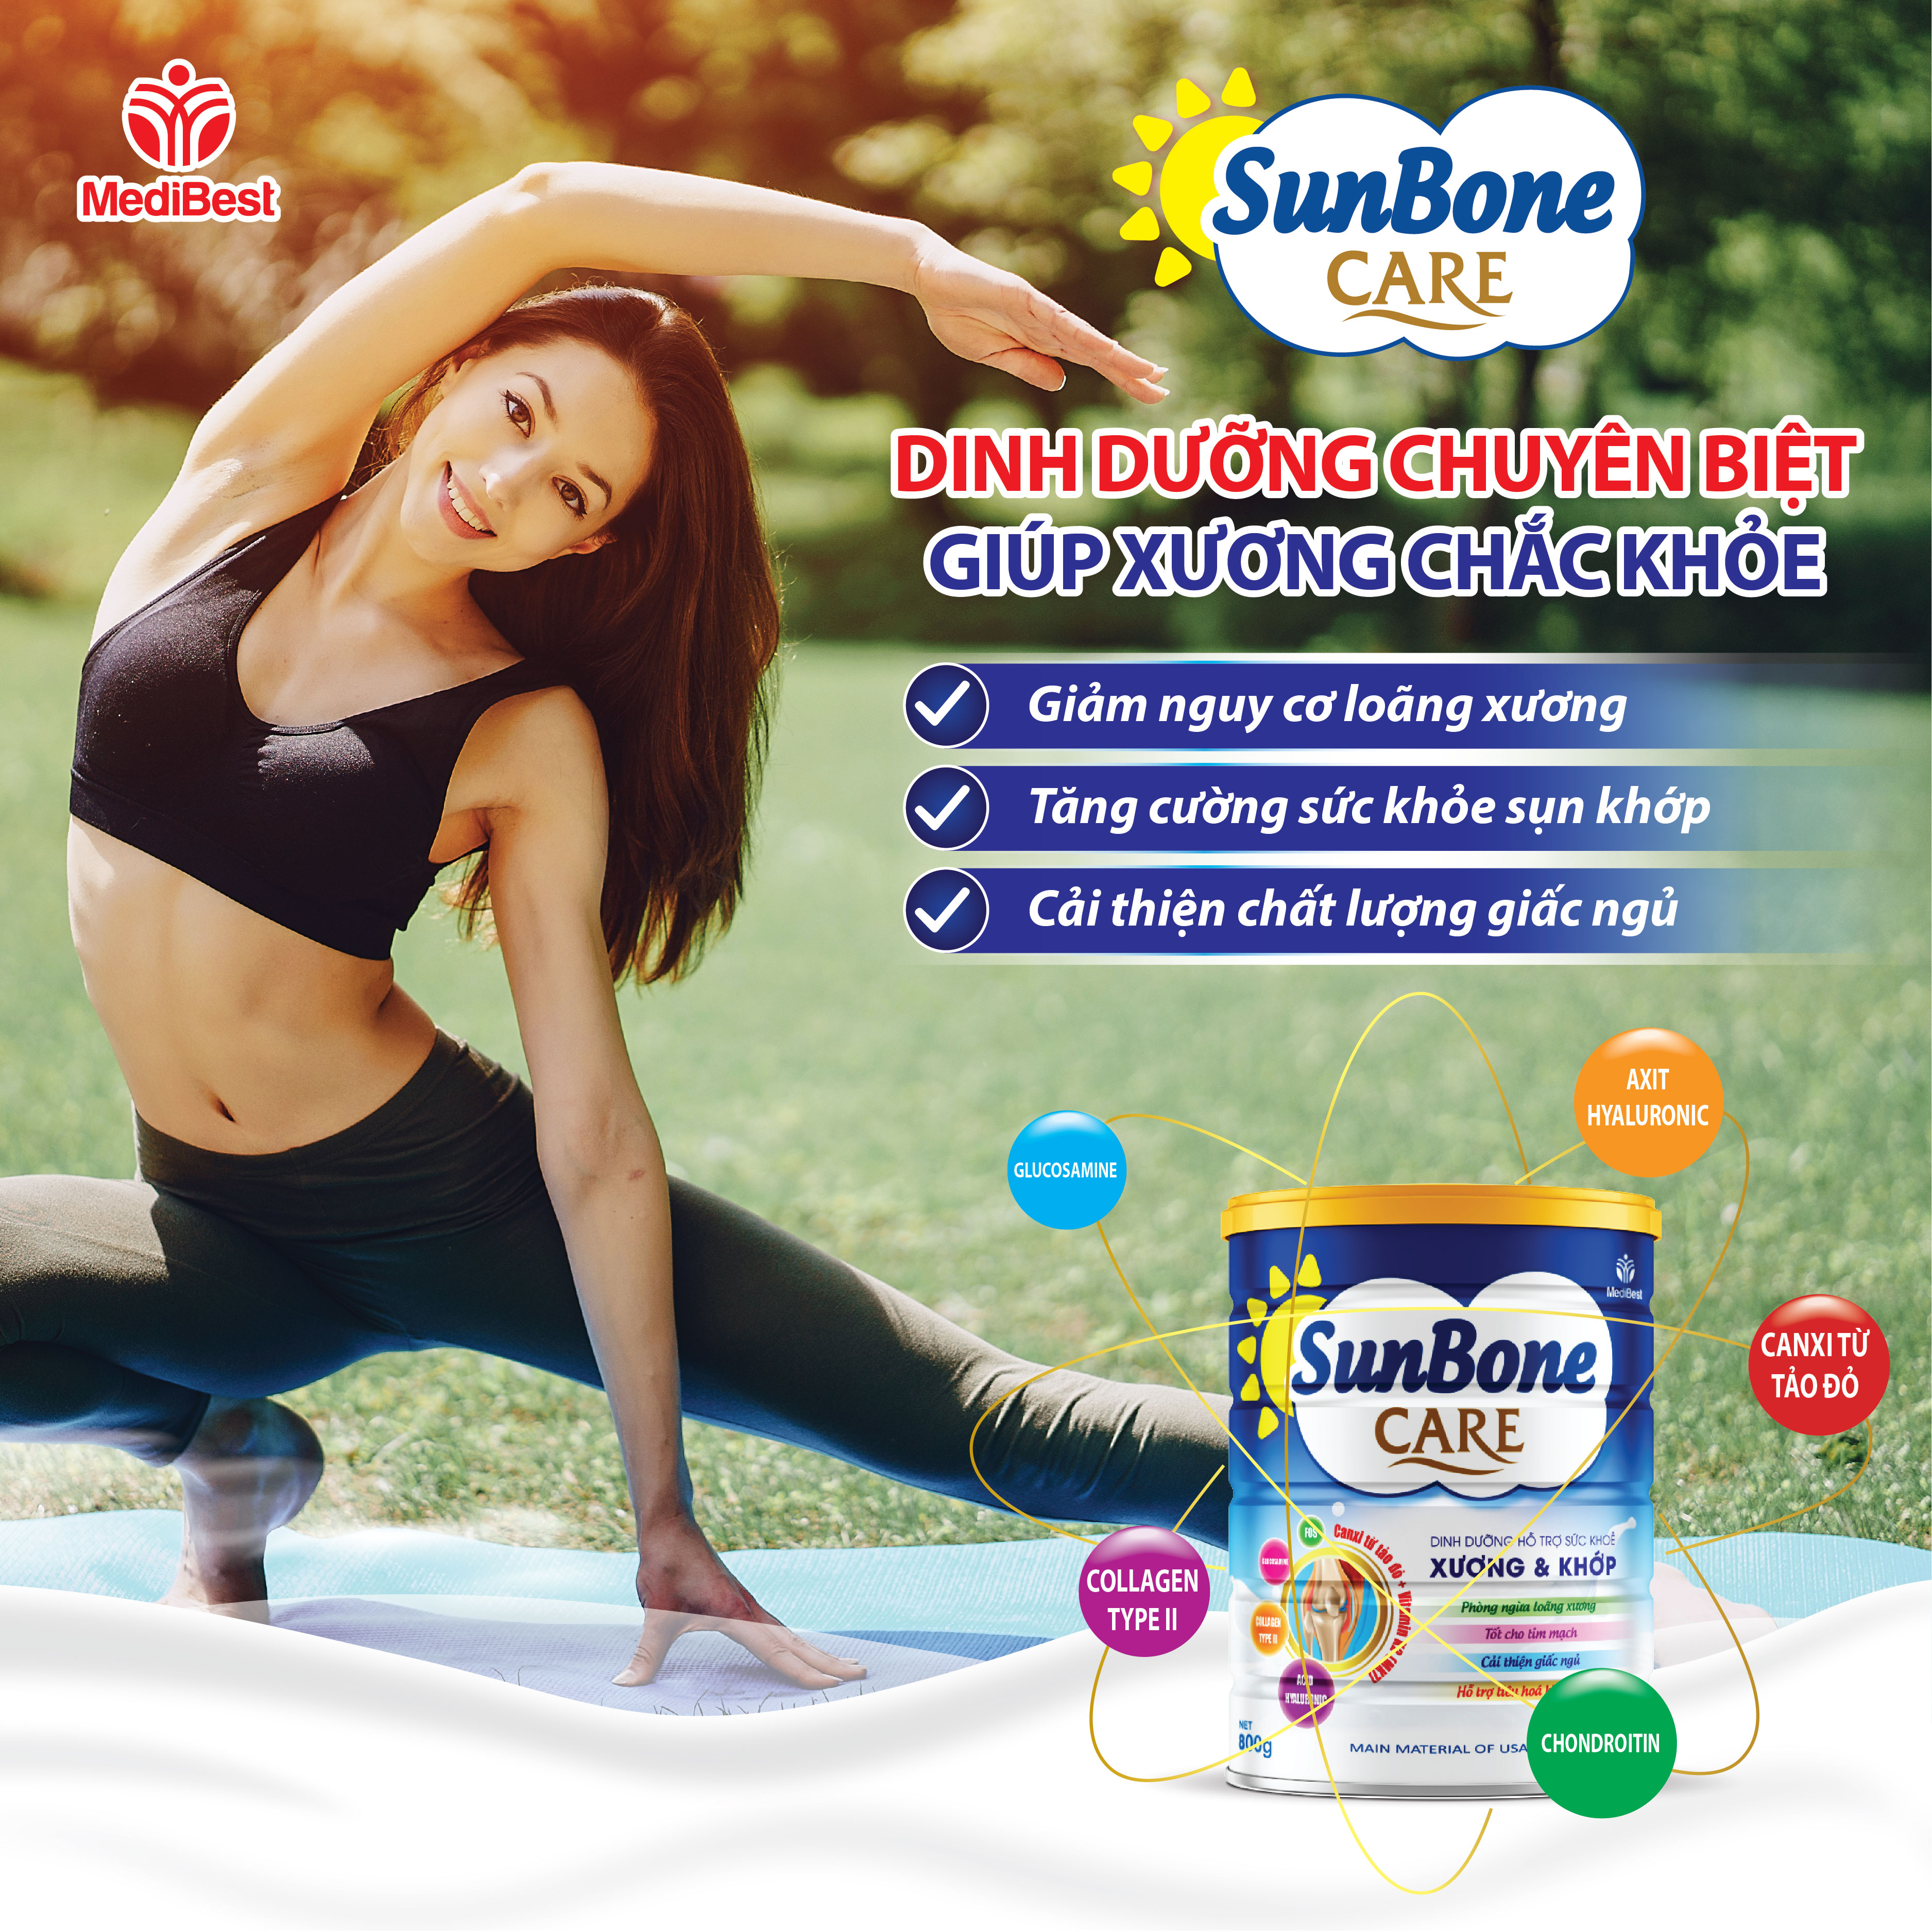 Sữa bột Sunbone Care - Dinh dưỡng đặc biệt giúp xương chắc khỏe